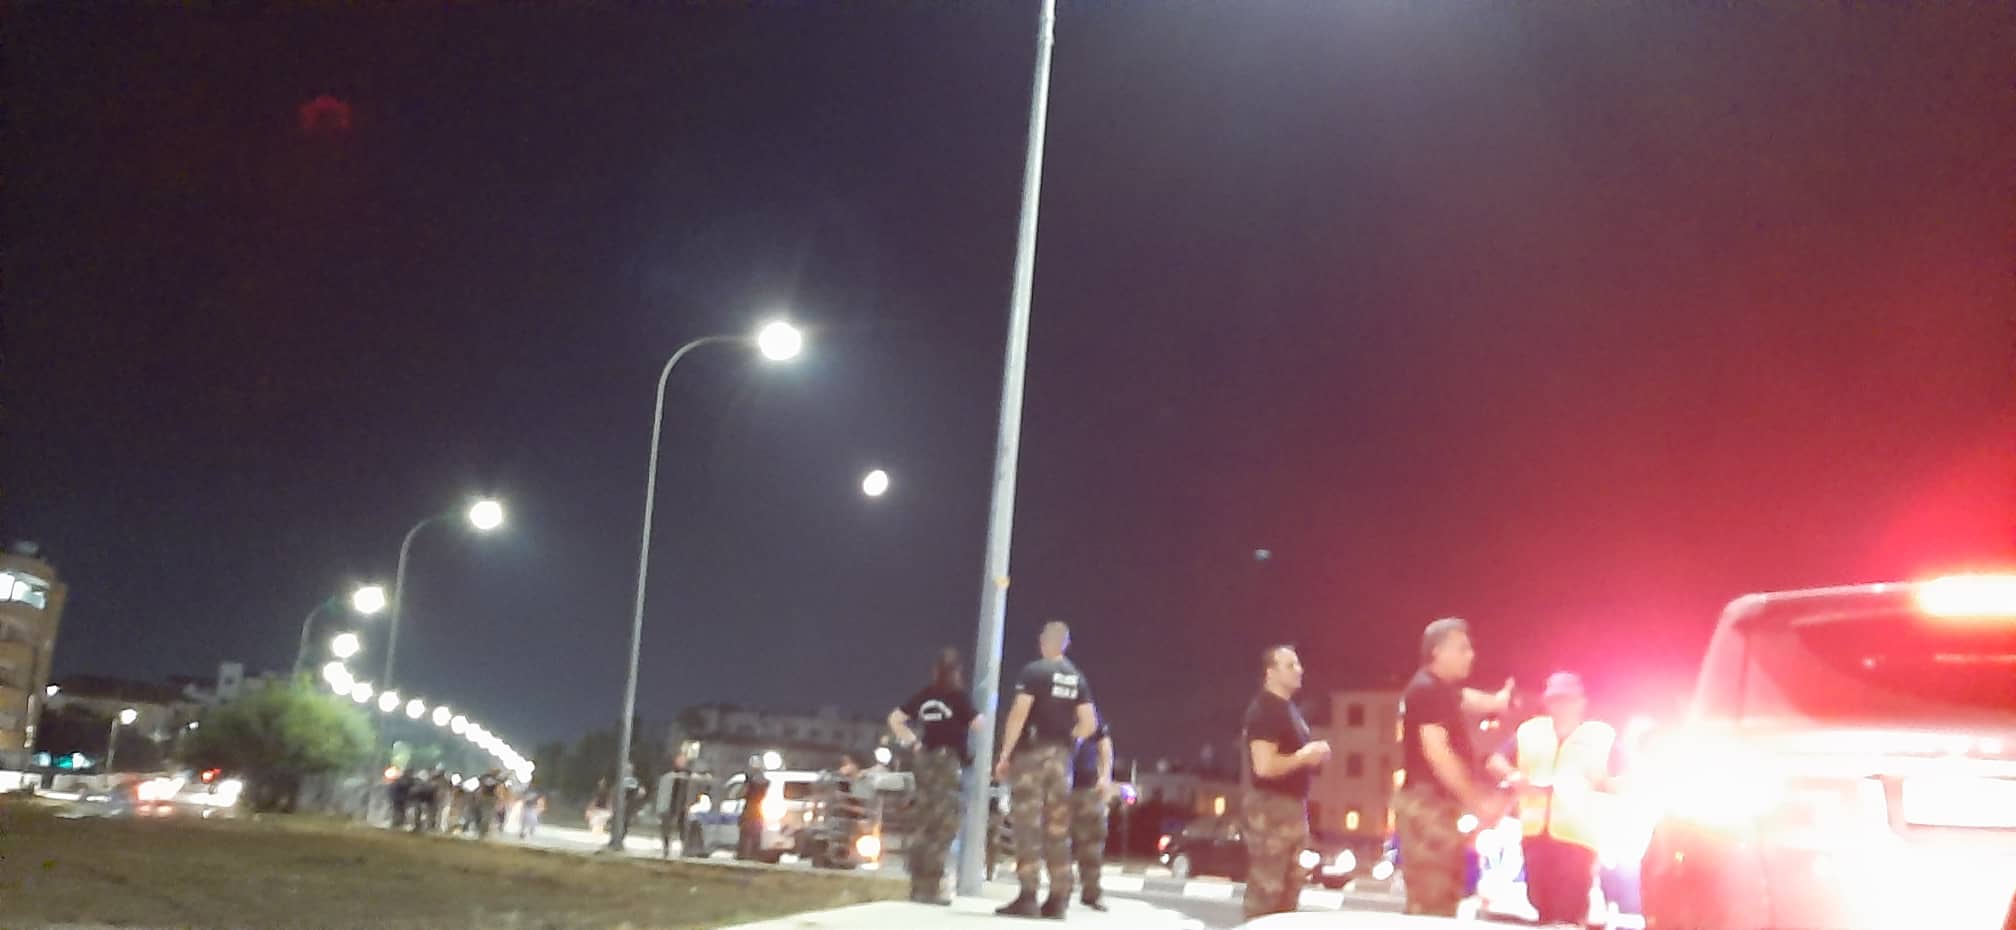 Δήμαρχος Λιβαδιών: “Η κατάσταση έχει ξεφύγει” – Η Αστυνομία ψάχνει από τα κλειστά κυκλώματα